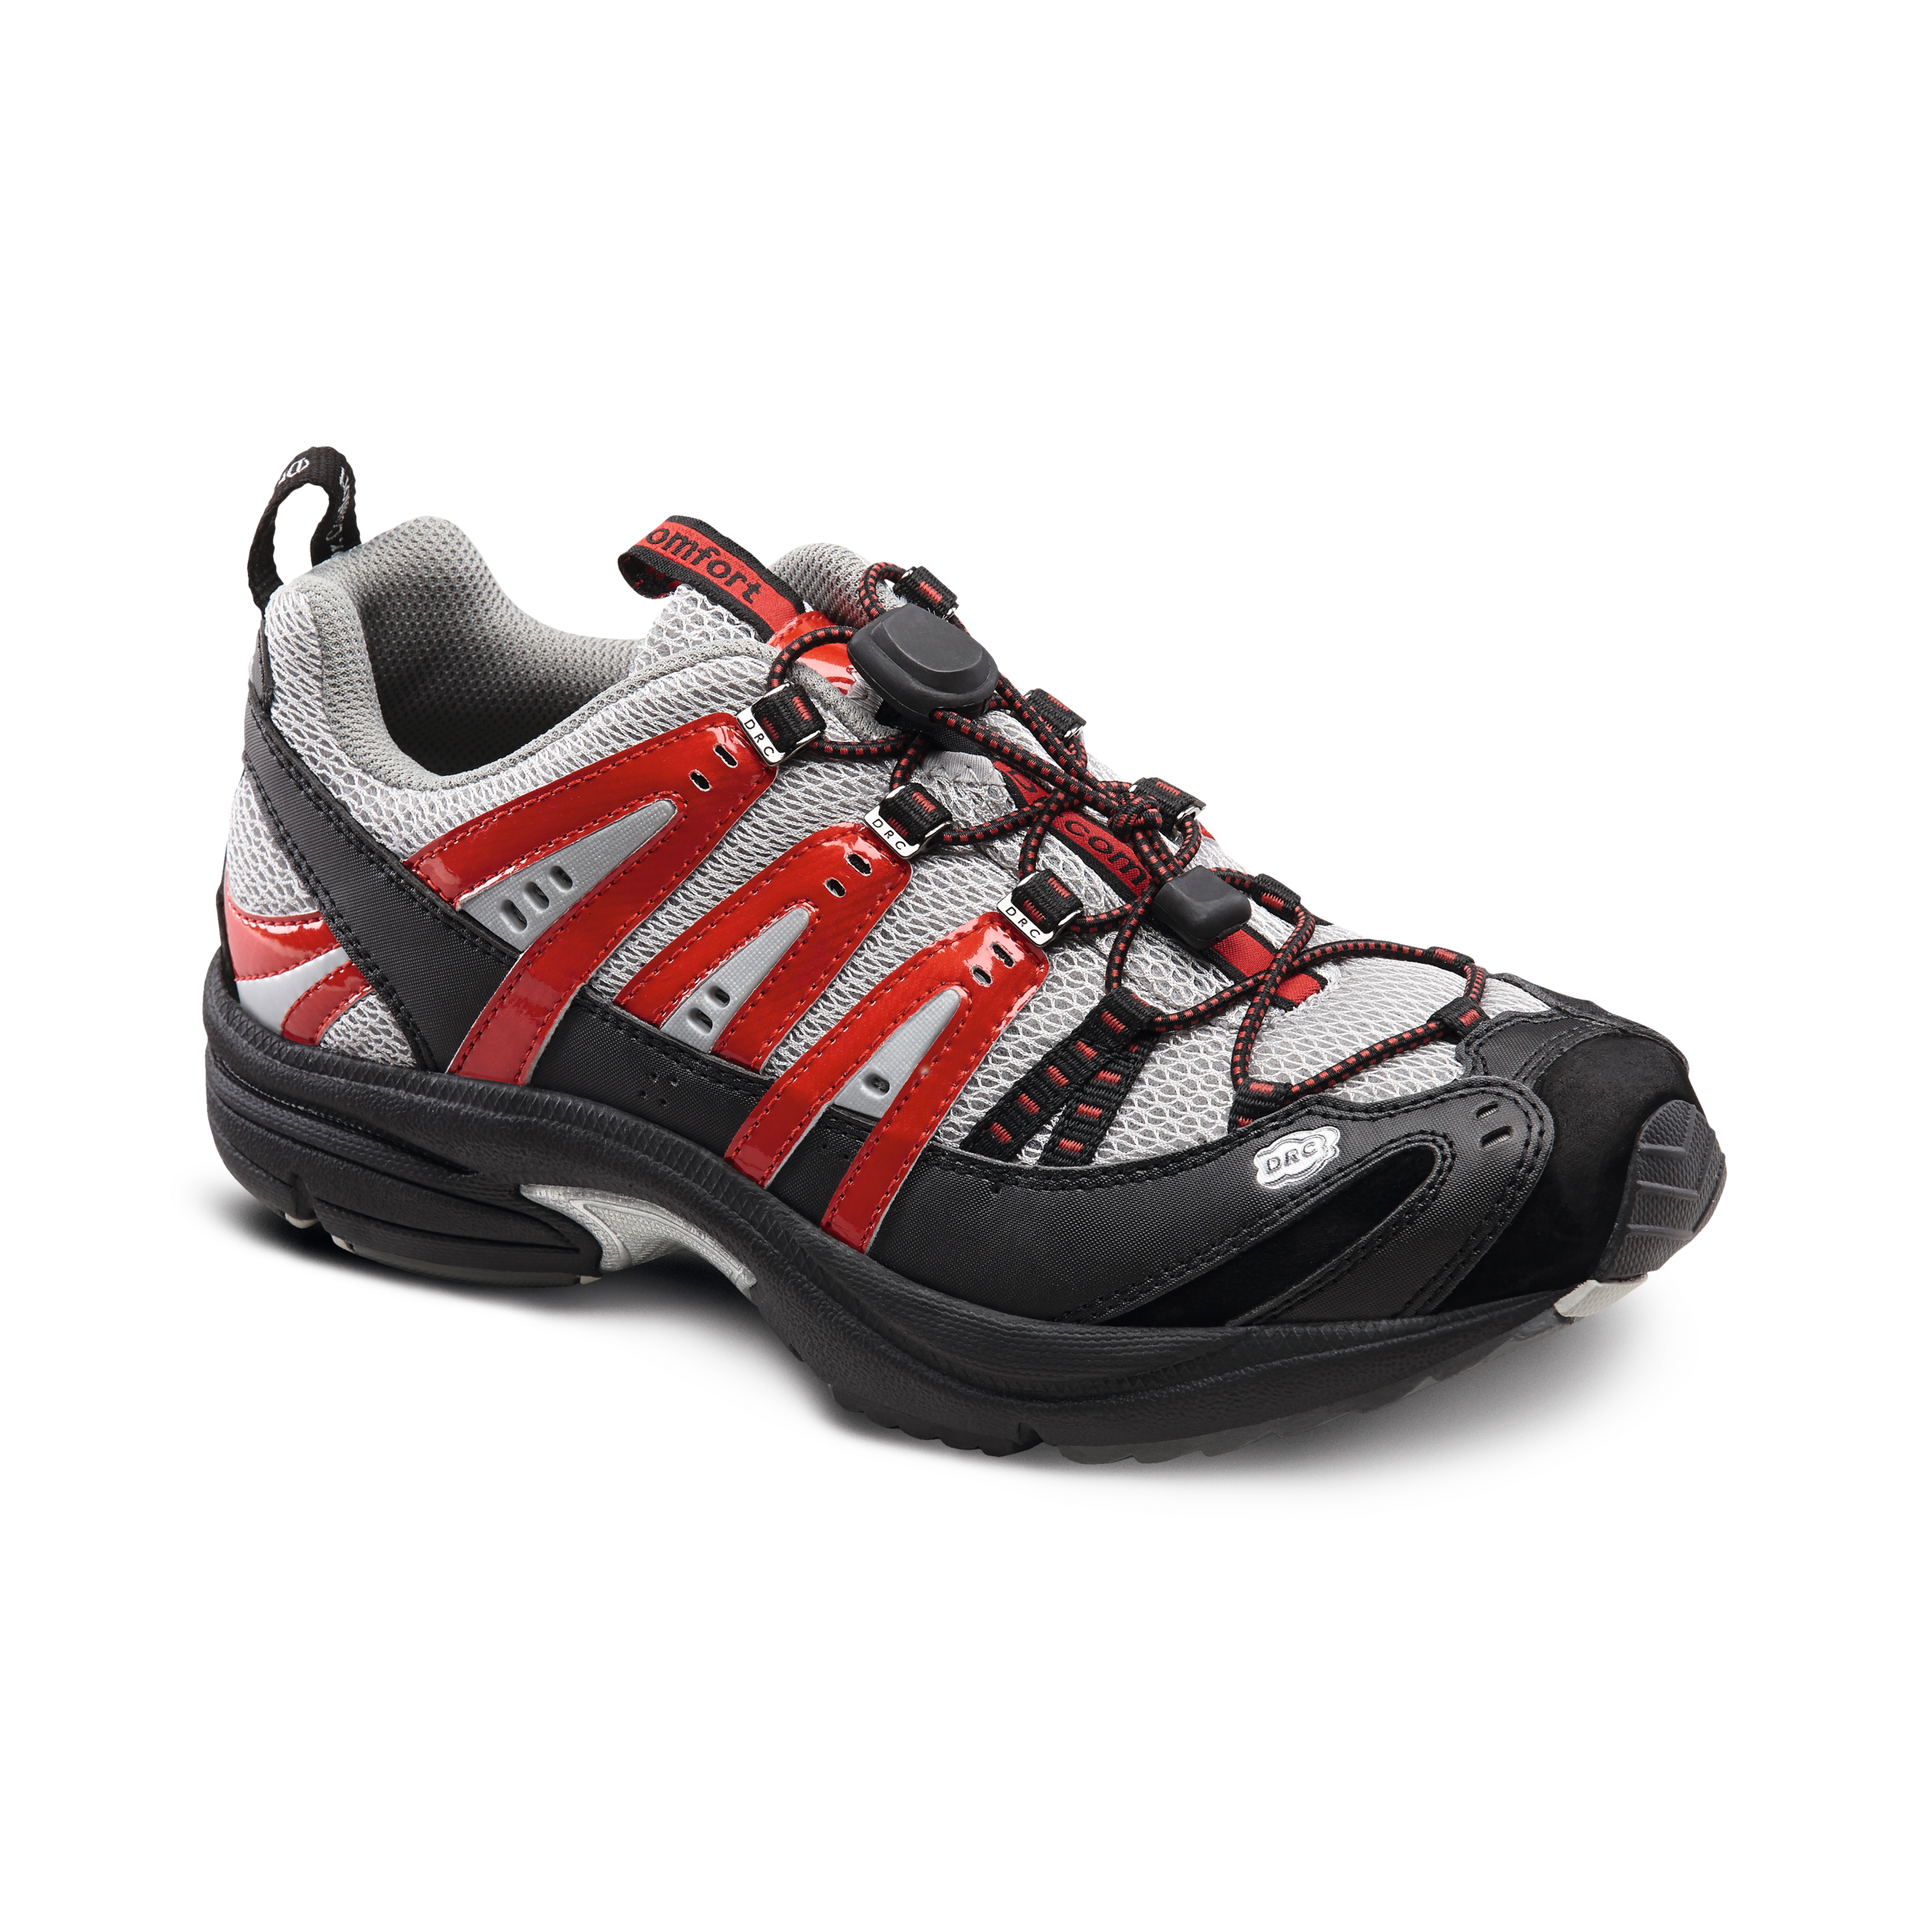 Produktbild DR. COMFORT® Performance rot, Orthopädische Schuhe, Ideal für den aktiven Mann. Leichter und komfortabler Freizeitschuh